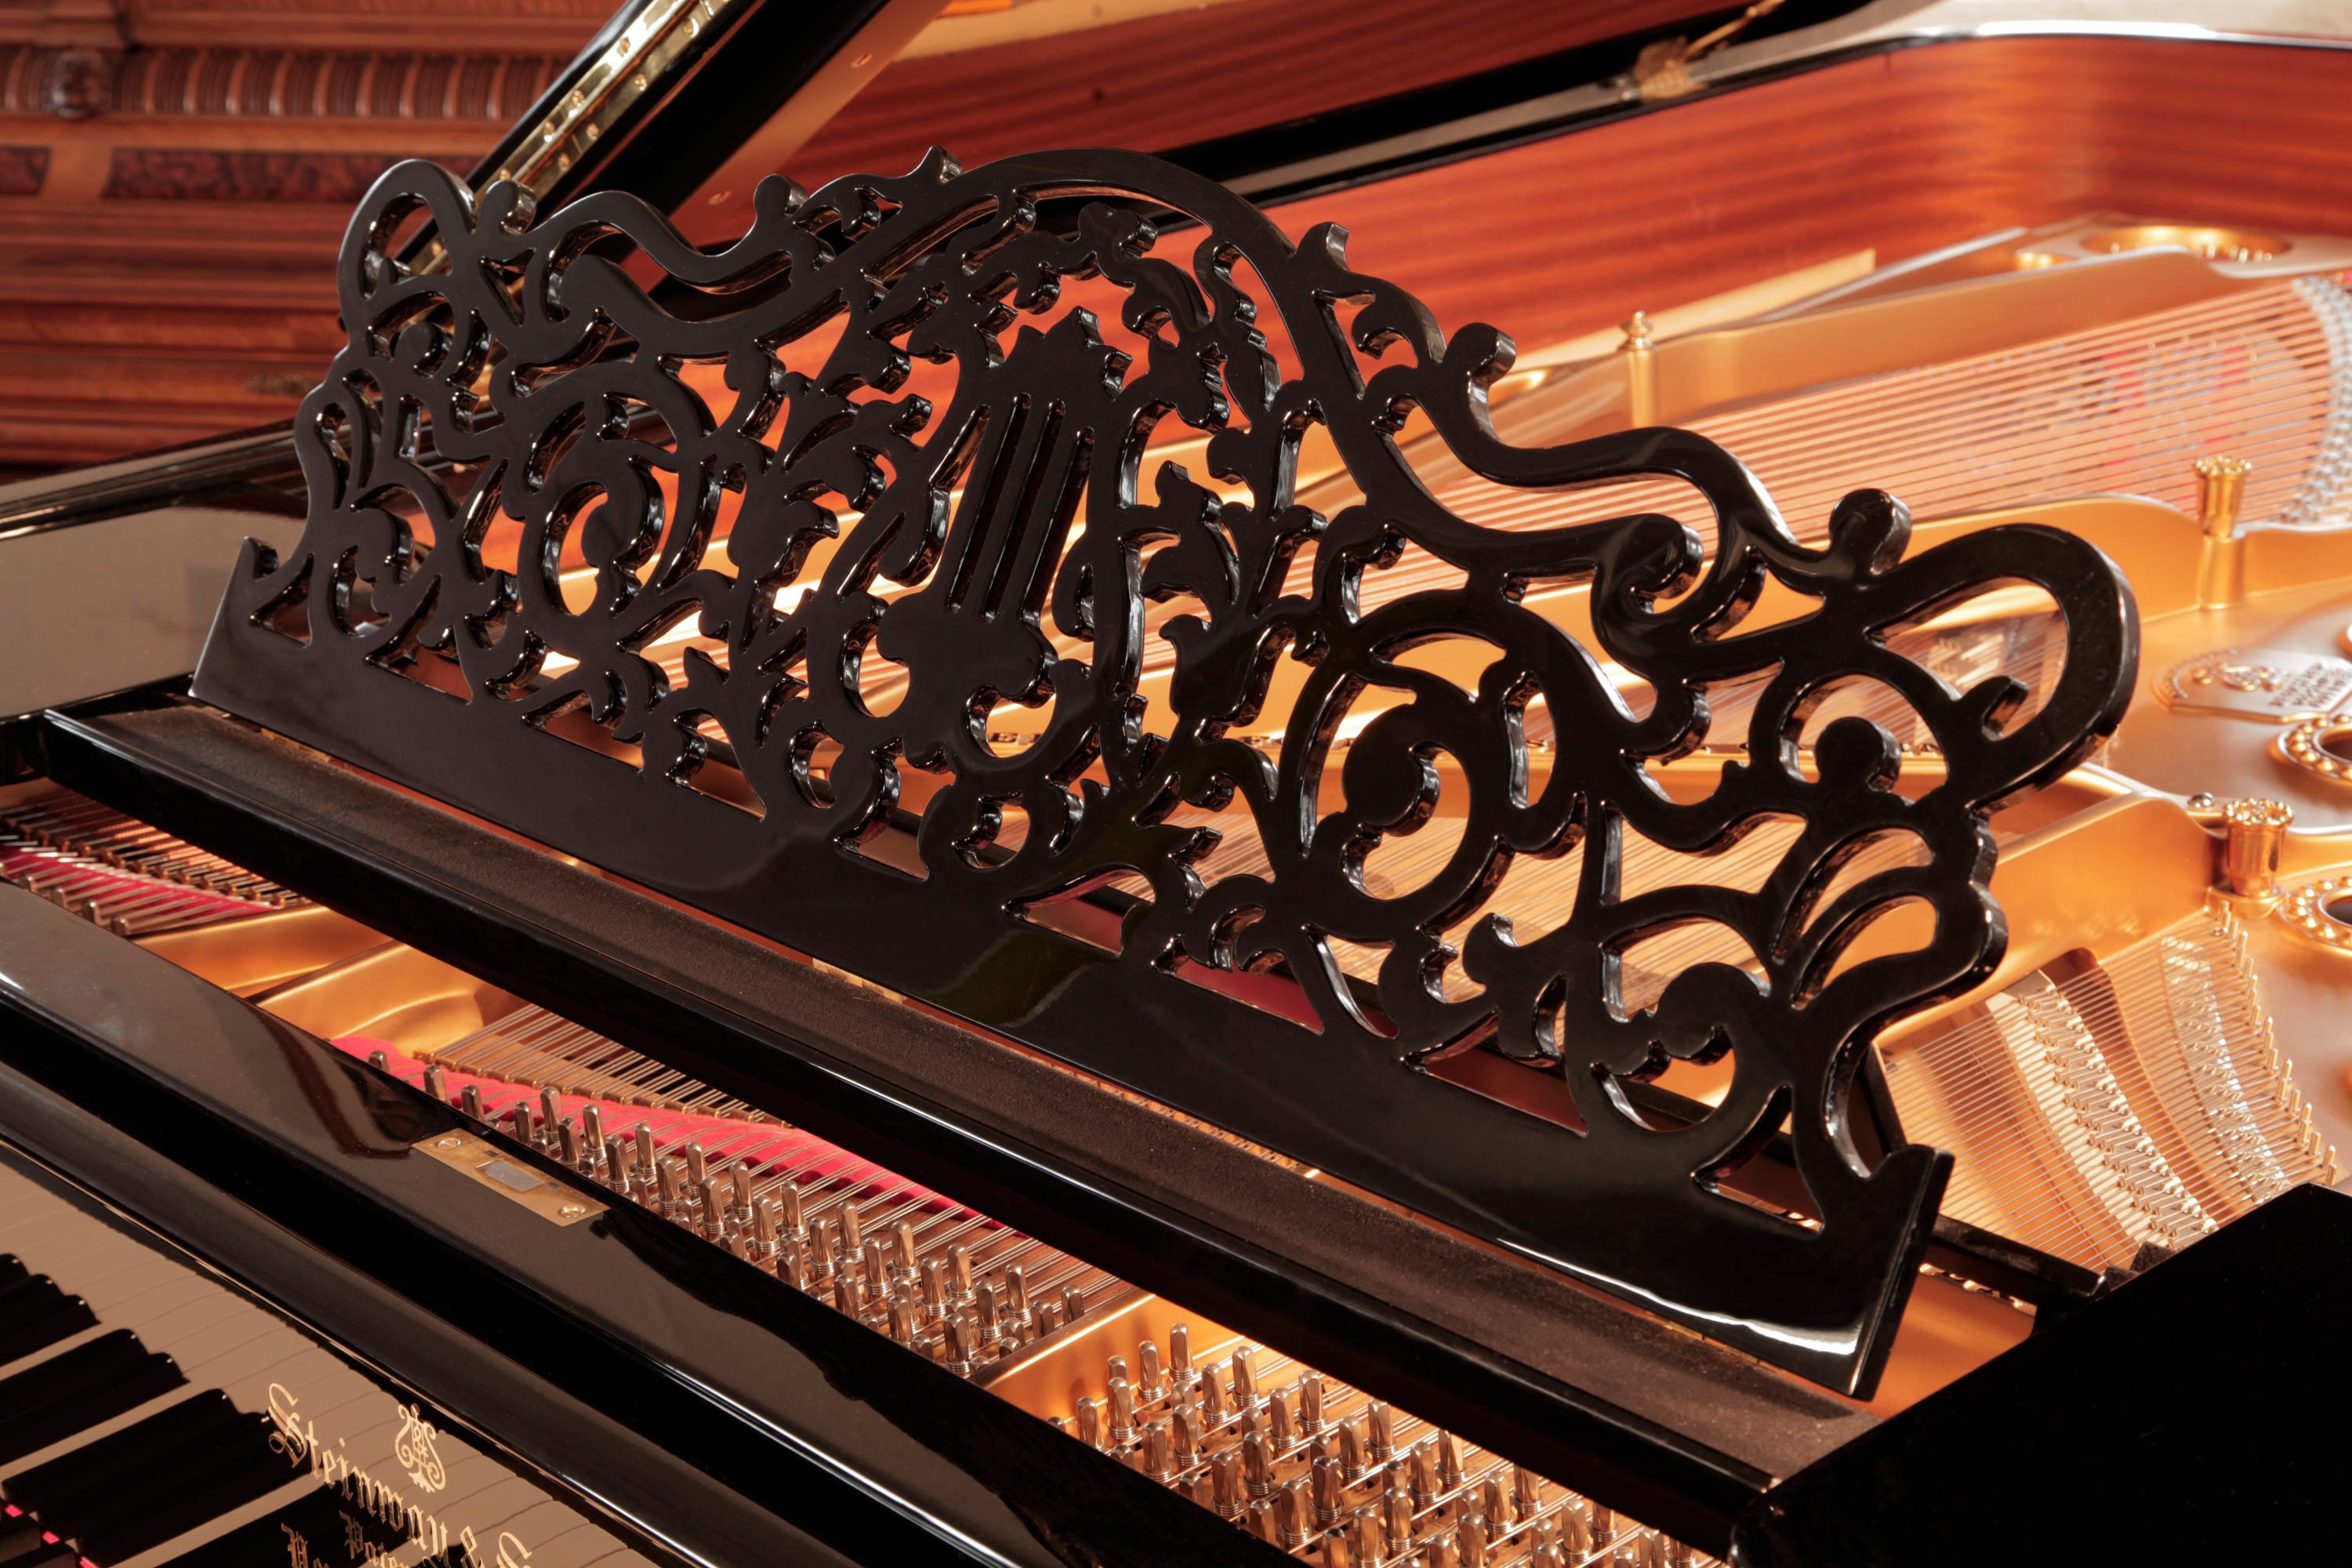 Piano à queue Steinway modèle B reconstruit en 1886, avec caisse noire.
Le pupitre est en arabesque ajourée avec un motif central de lyre. 
entouré de vrilles et de feuillages stylisés. La joue de piano serpentine est dotée d'une double moulure de